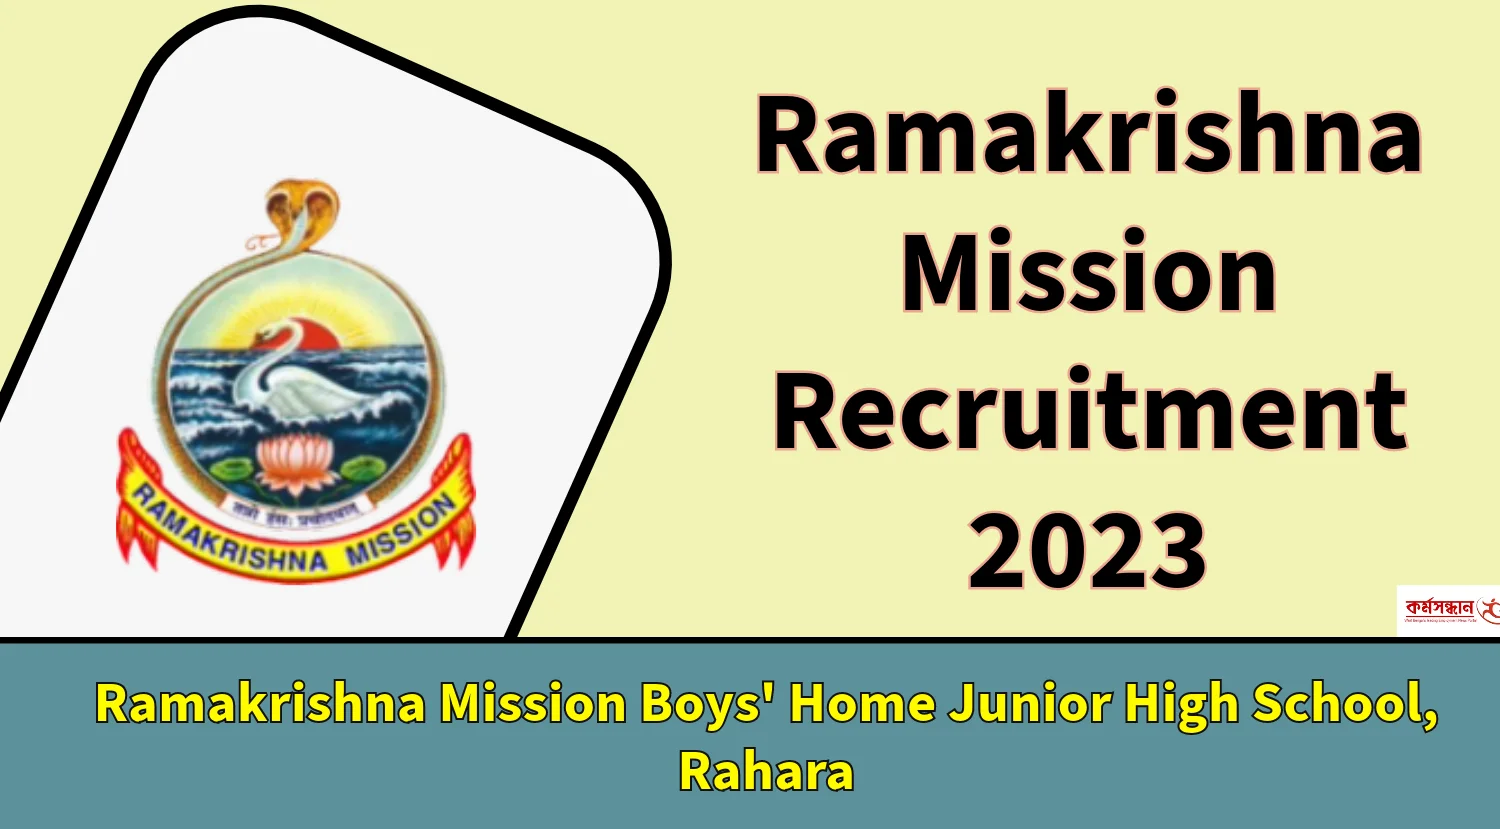 Significance of the logo/emblem of Ramakrishna Math and Ramakrishna Mission  @EaiBeshBhaloAchhi - YouTube